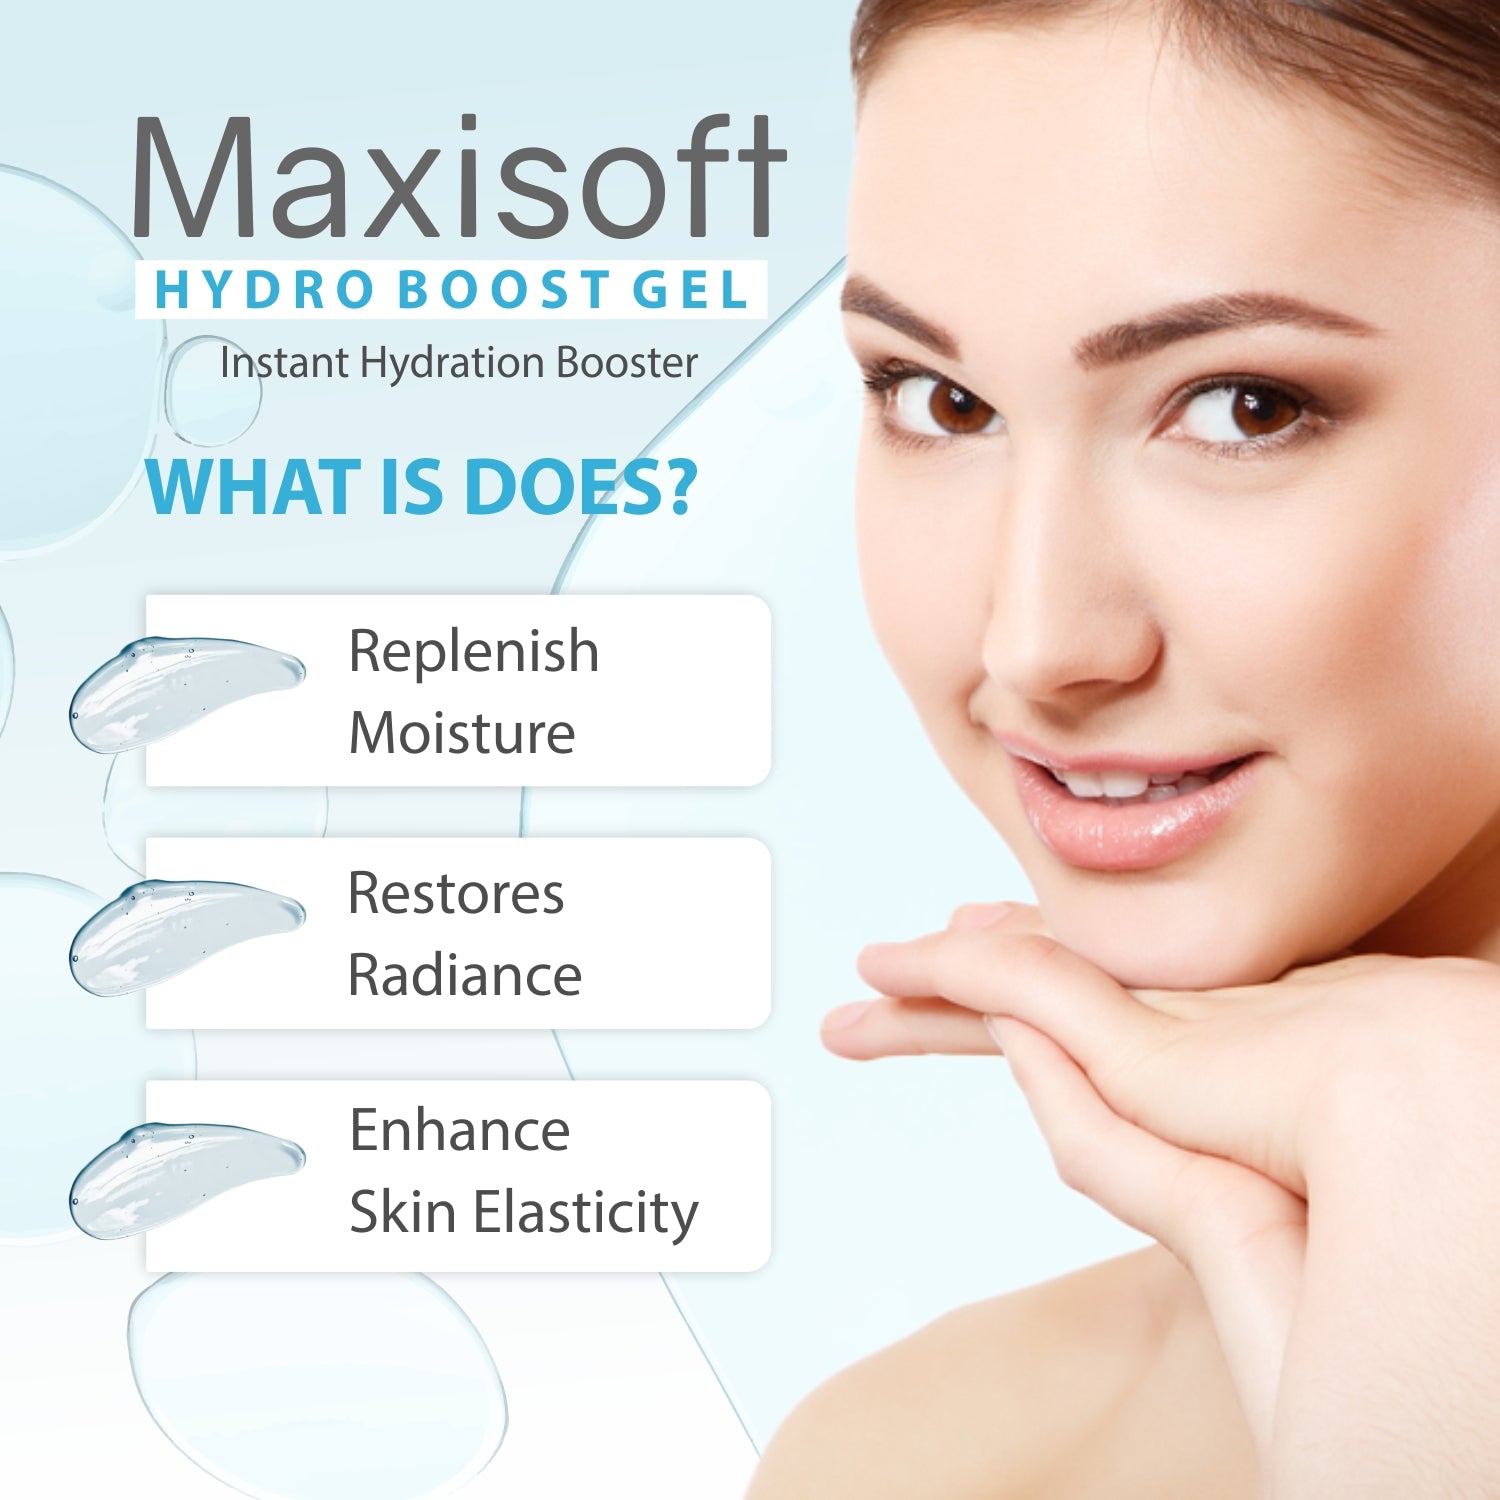 Maxisoft Hydro Boost Gel (50 gm)